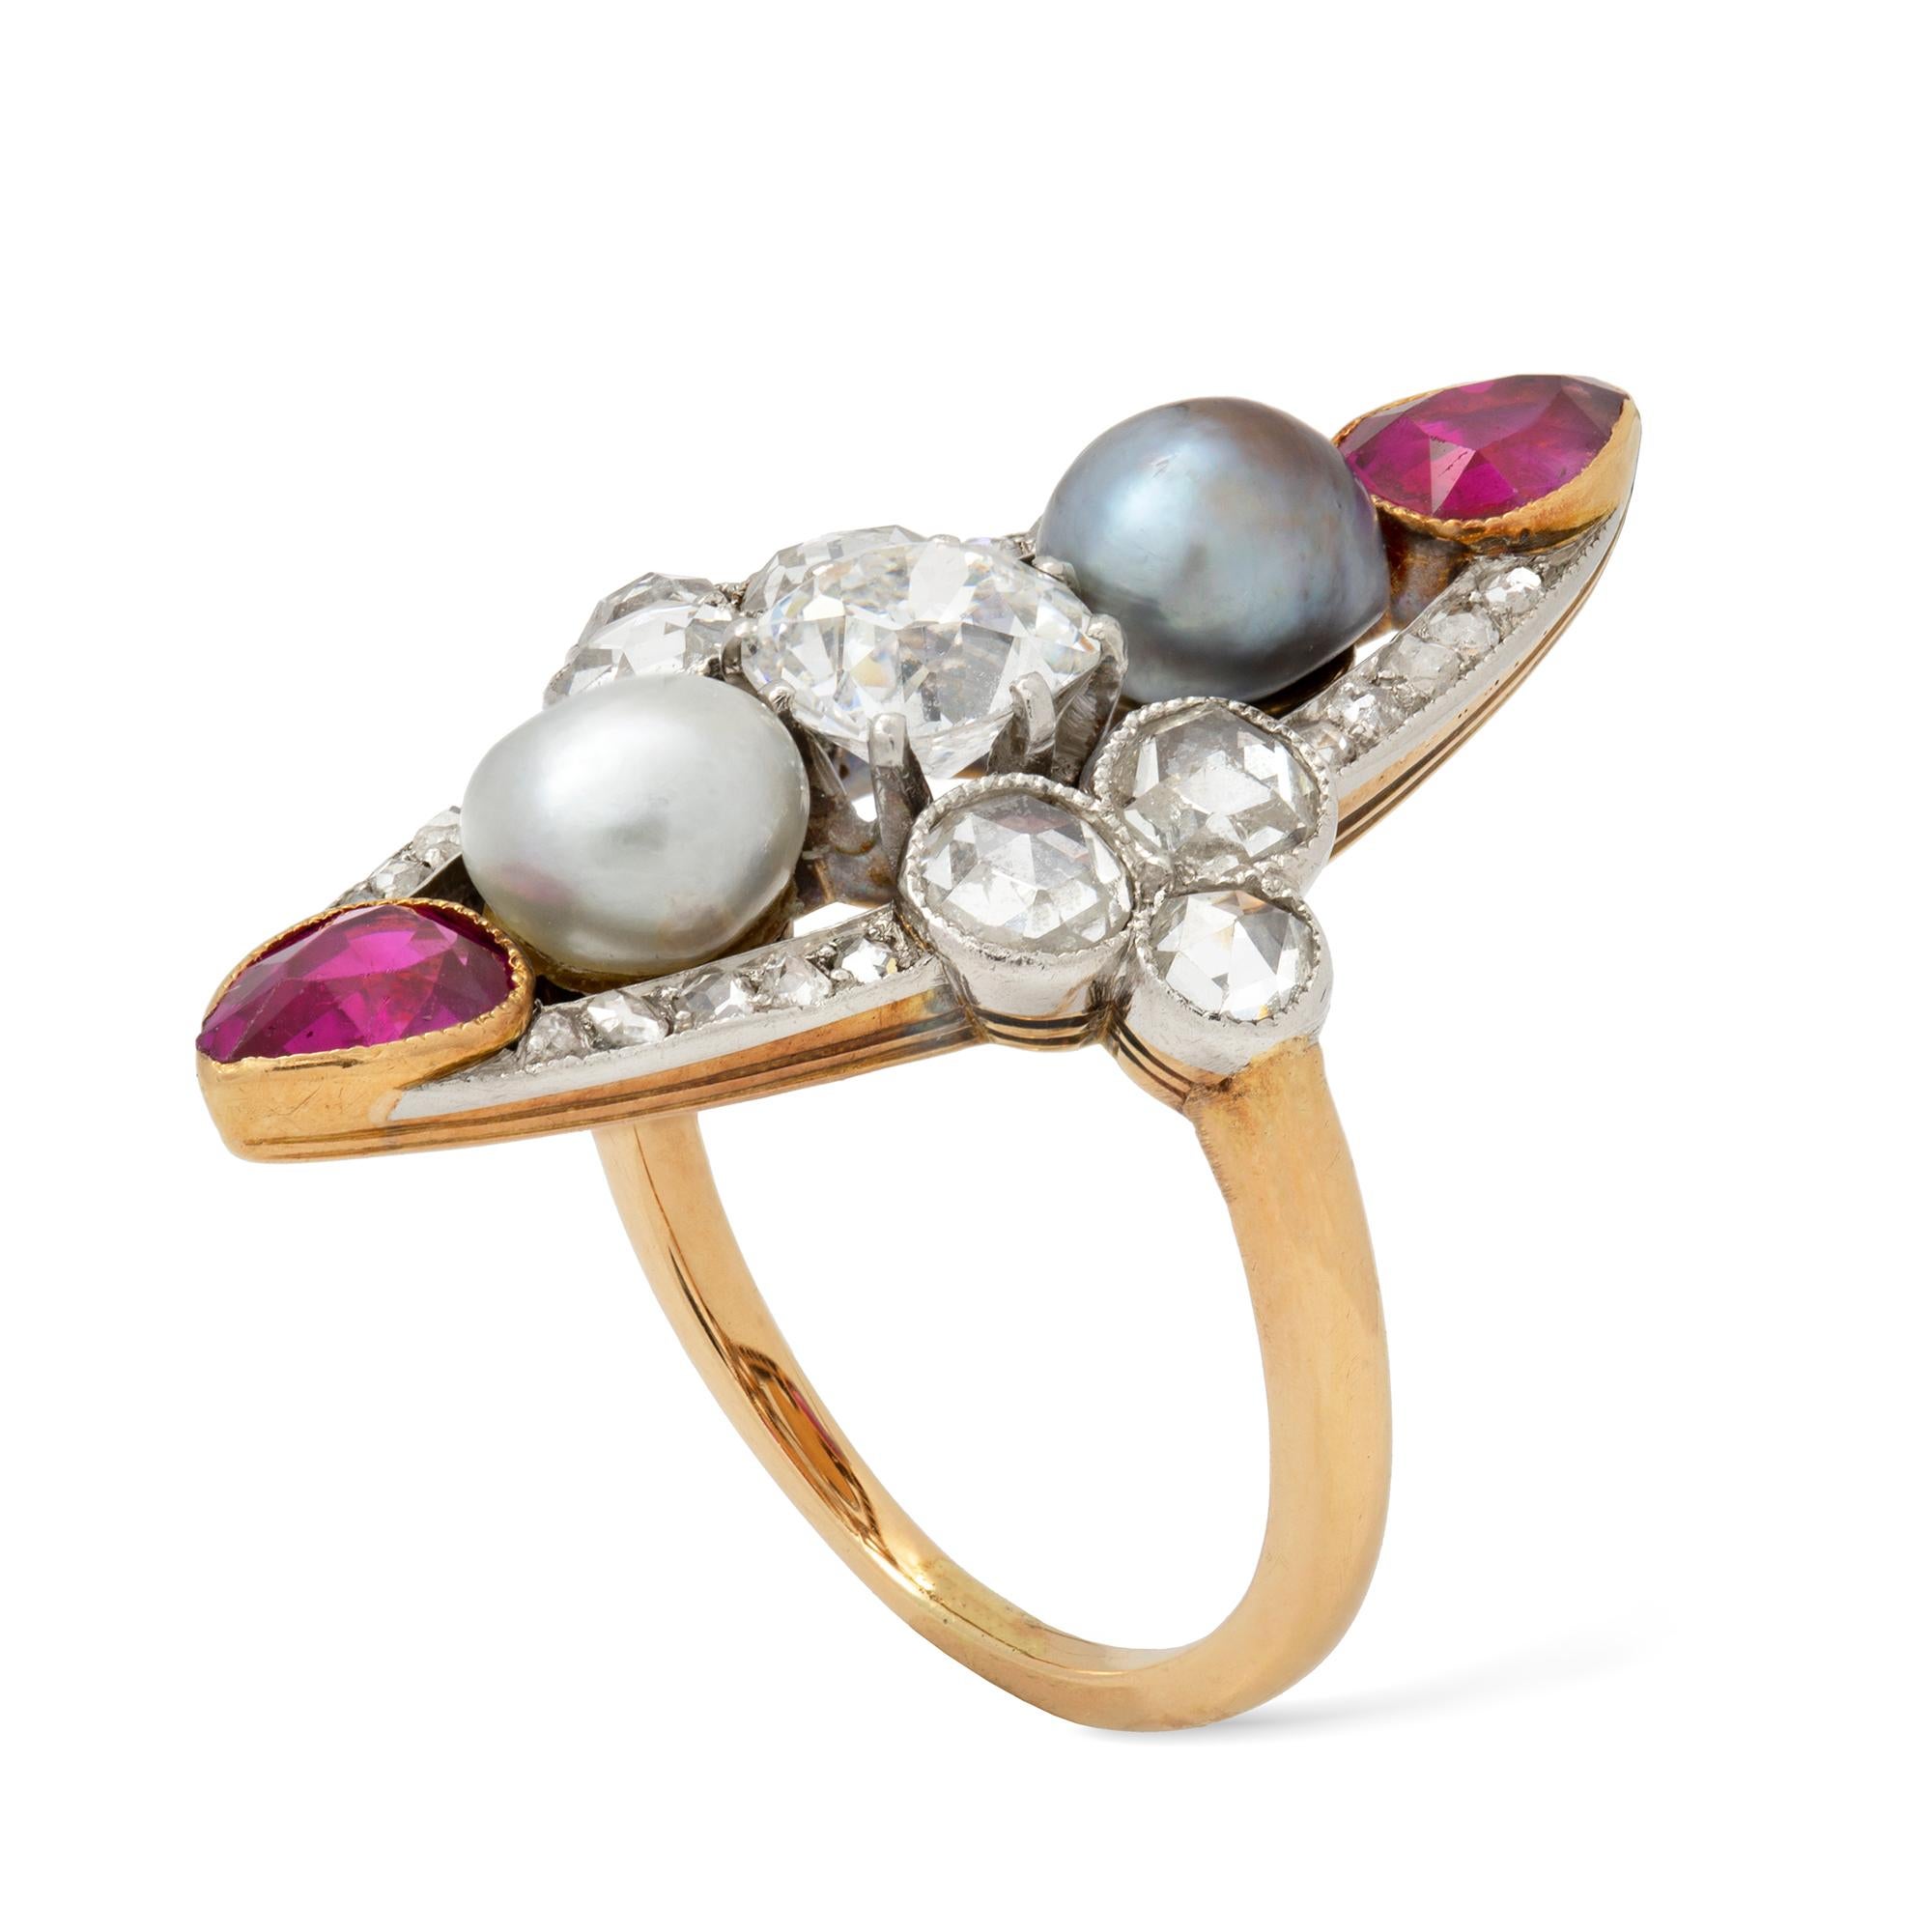 Ein Belle-Epoque-Ring mit Perlen, Rubinen und Diamanten in Form einer Navette, der alte Diamant im Kissenschliff mit einem geschätzten Gewicht von 0,8 Karat ist vertikal zwischen einer weißen und einer grauen Perle gefasst, begleitet von einem